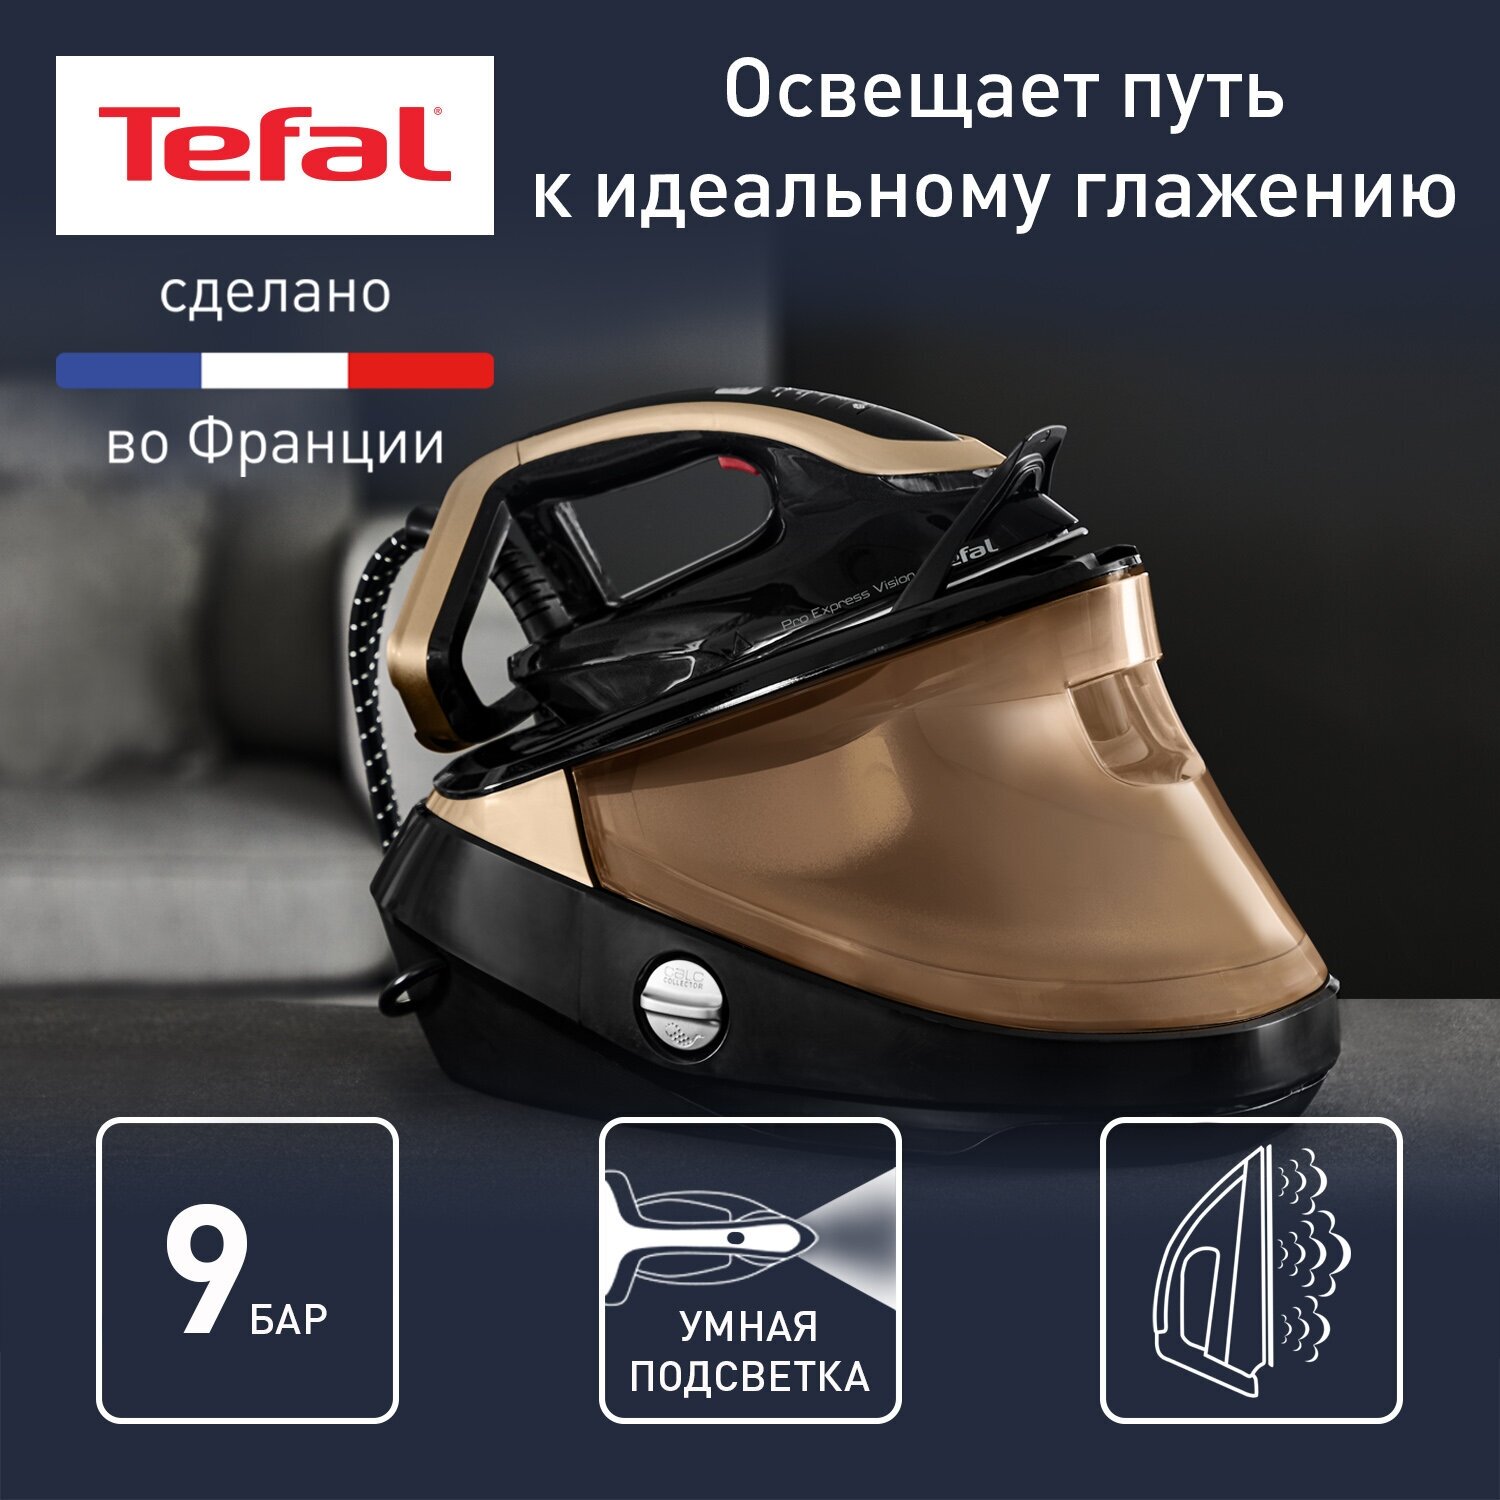 Парогенератор Tefal Pro Express Vision GV9820E0 черный/медный — купить в интернет-магазине по низкой цене на Яндекс Маркете